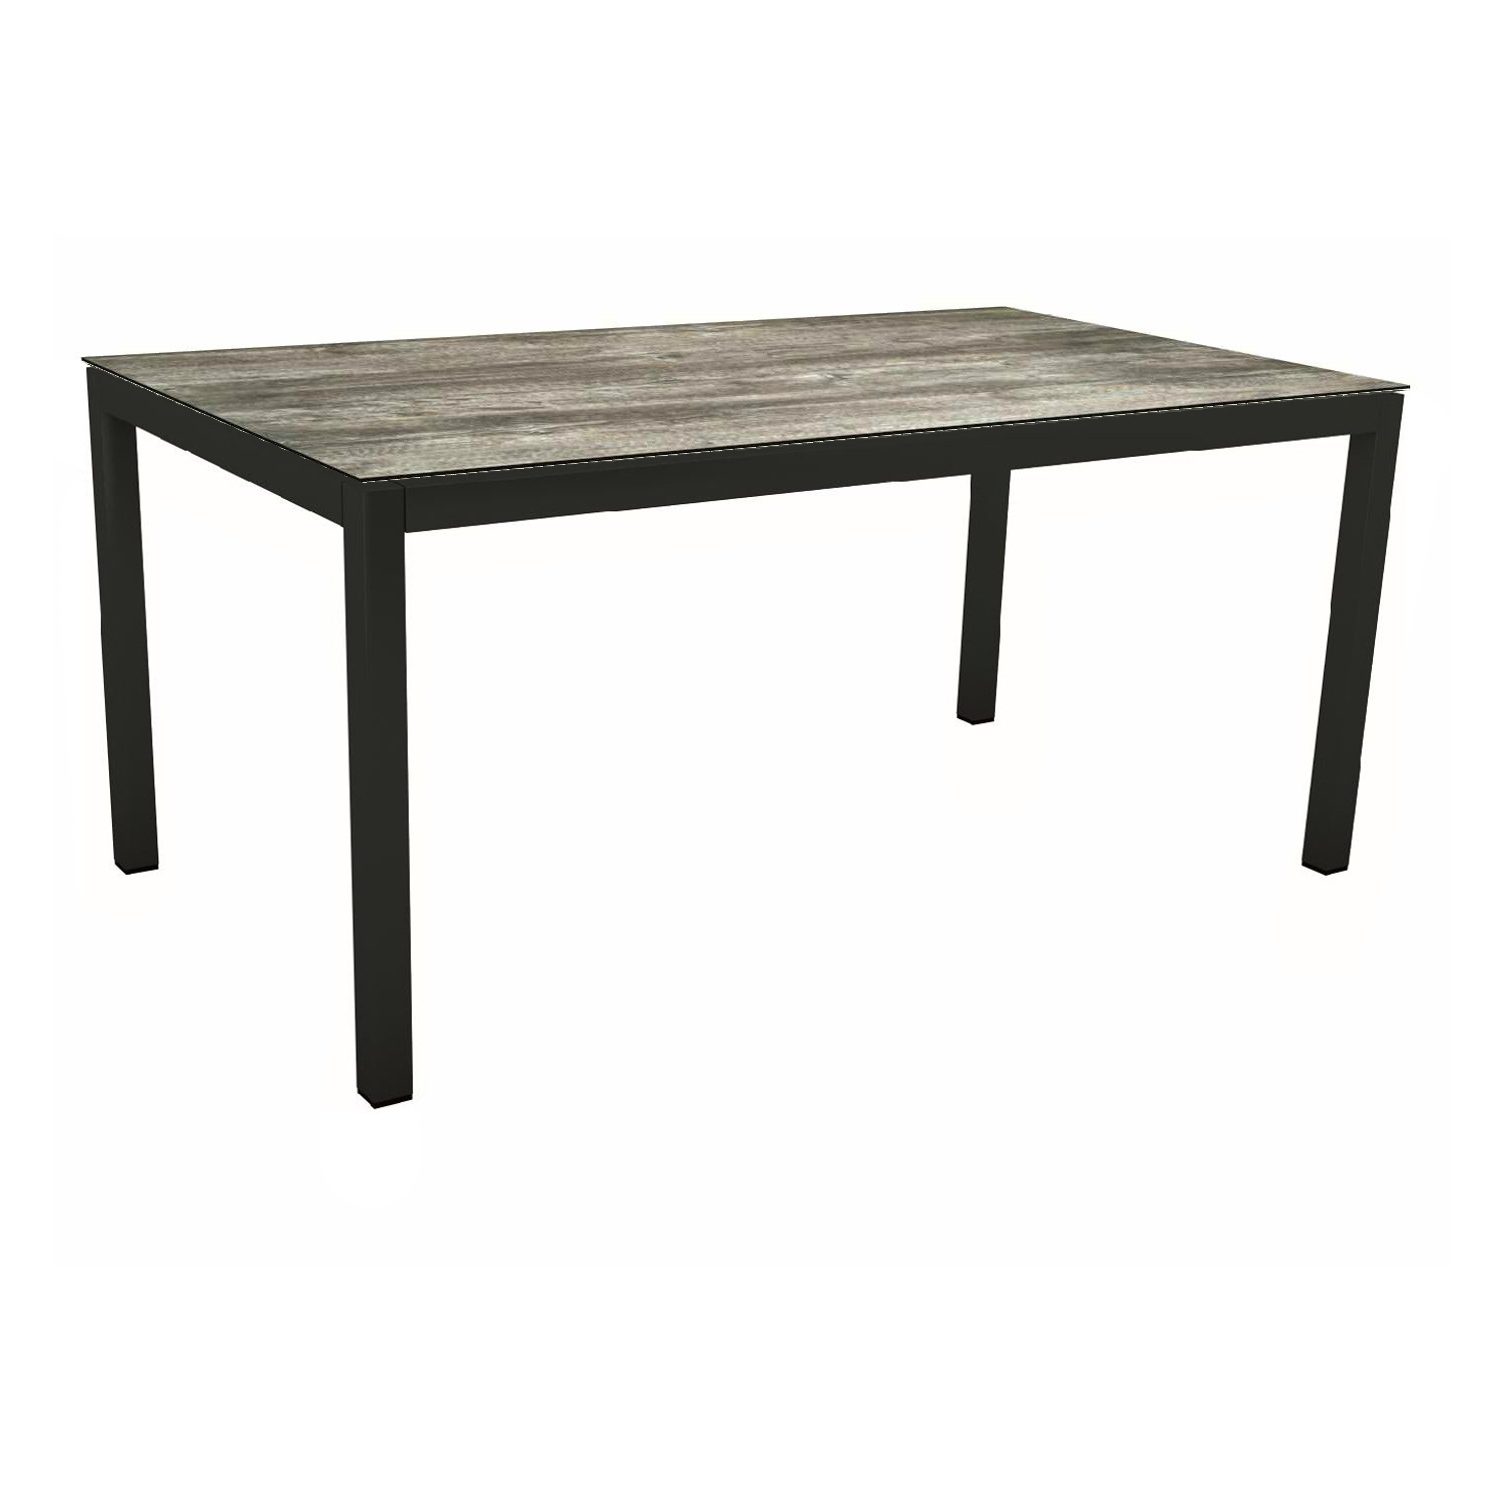 Stern Gartentisch, Gestell Aluminium schwarz matt, Tischplatte HPL Tundra Grau, 130x80 cm